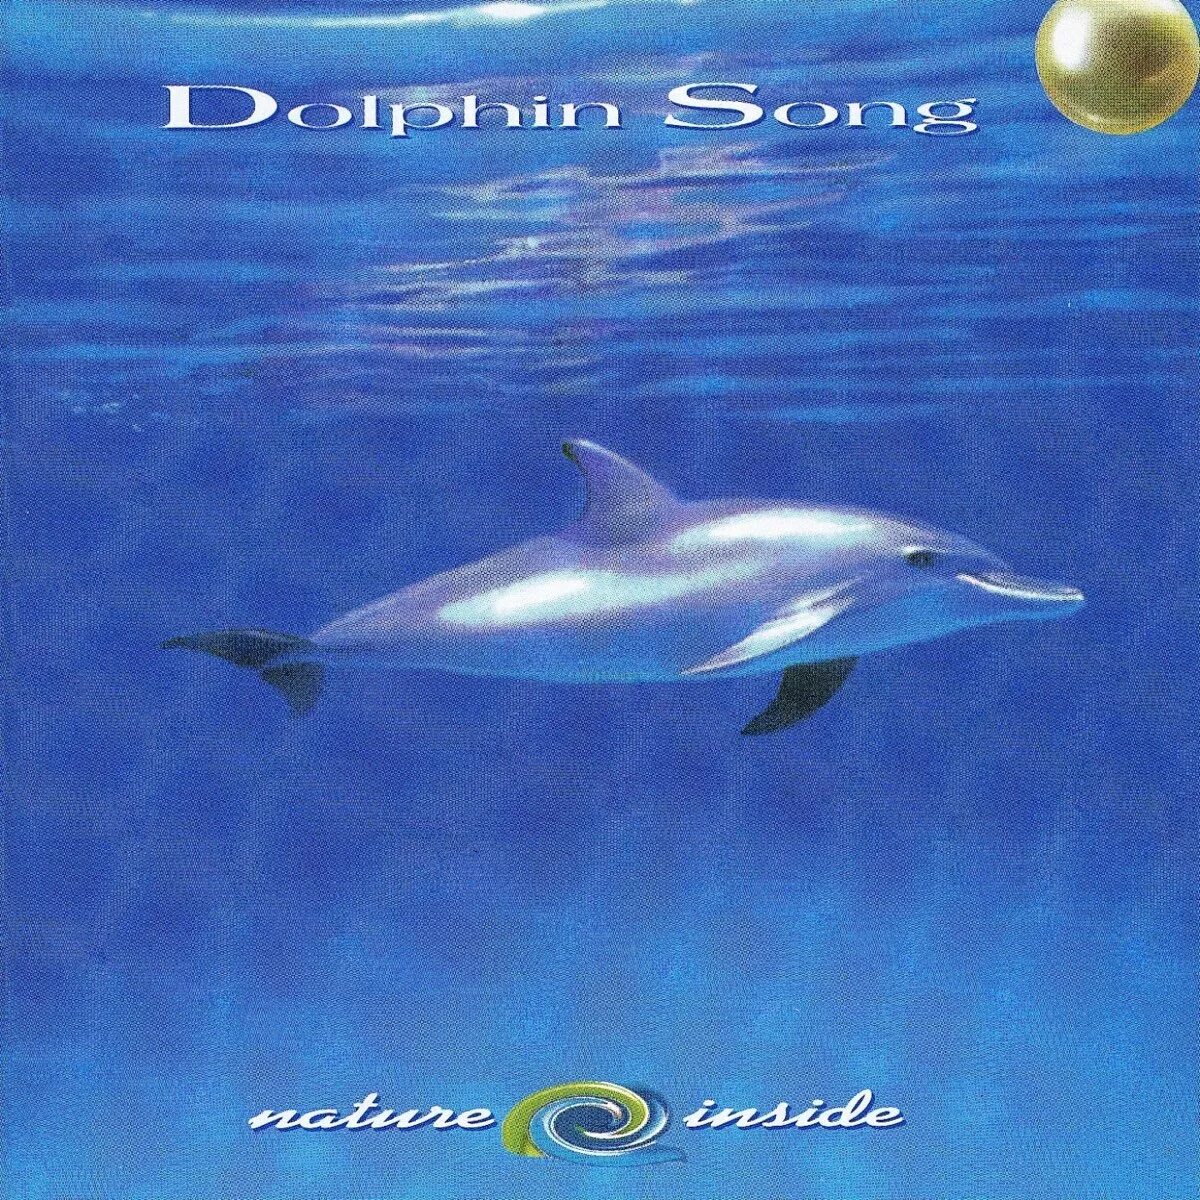 Песня танец дельфинов. Дельфин альбомы. Дельфин обложки альбомов. Альбом Дельфинчик. Альбом дельфина Эндрю.